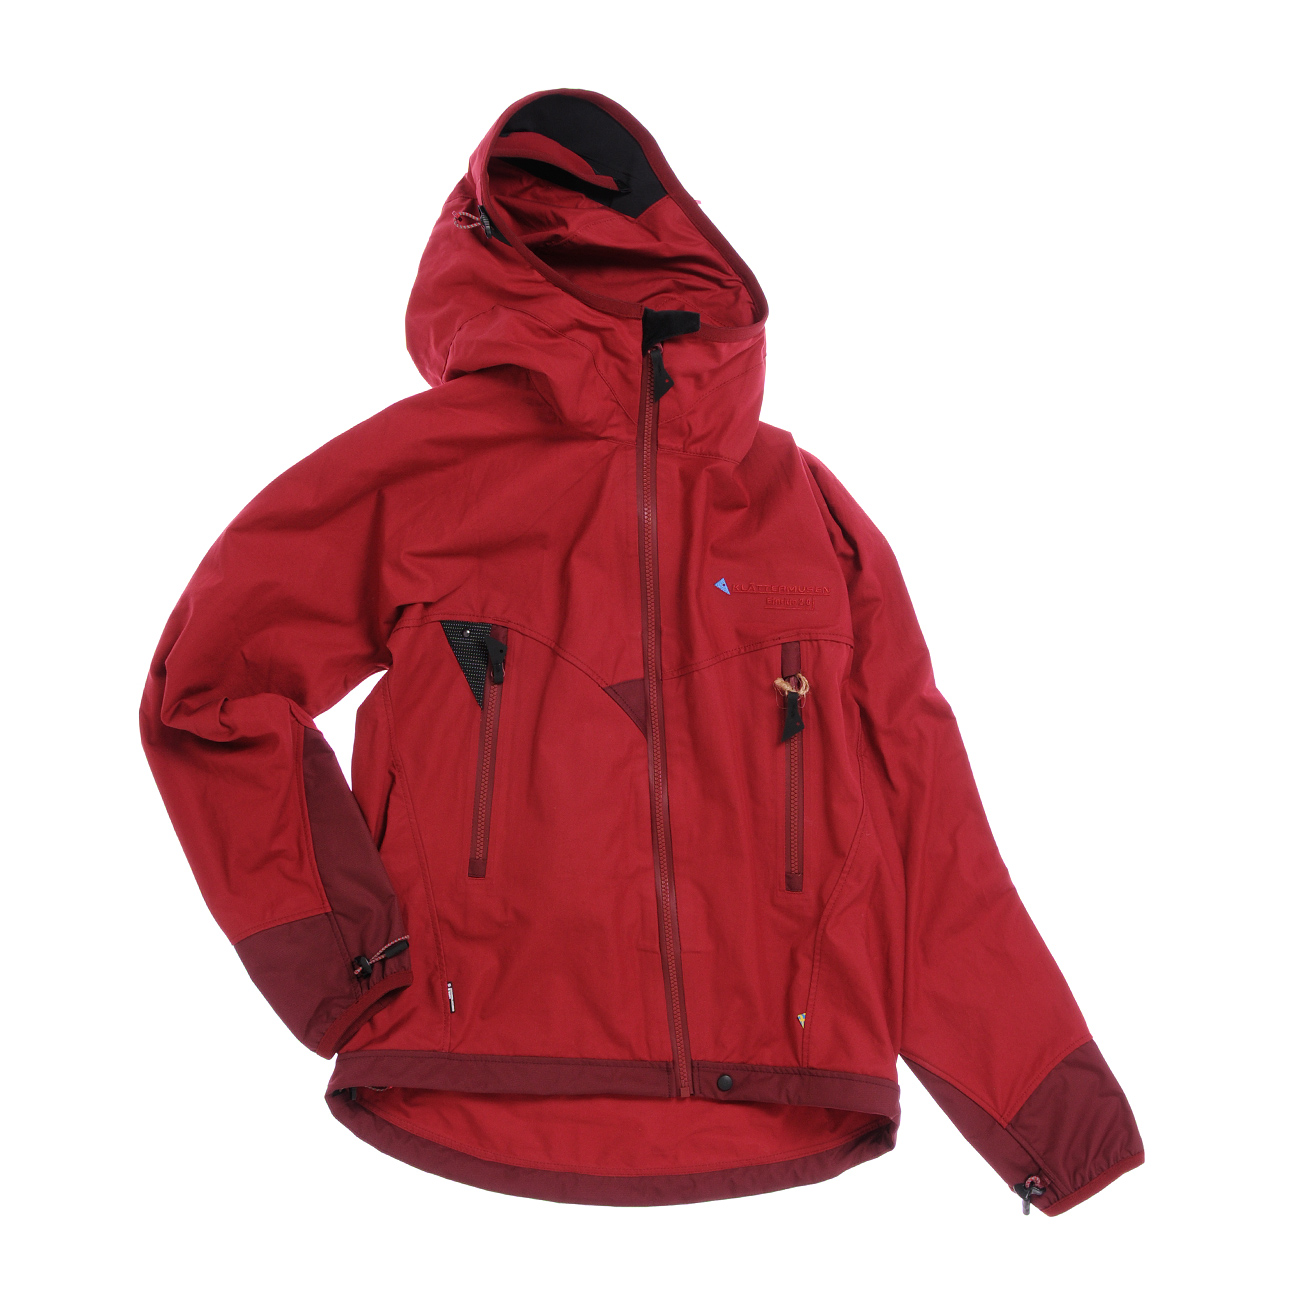 Einride 2.0 Jacket M's - Granate Red